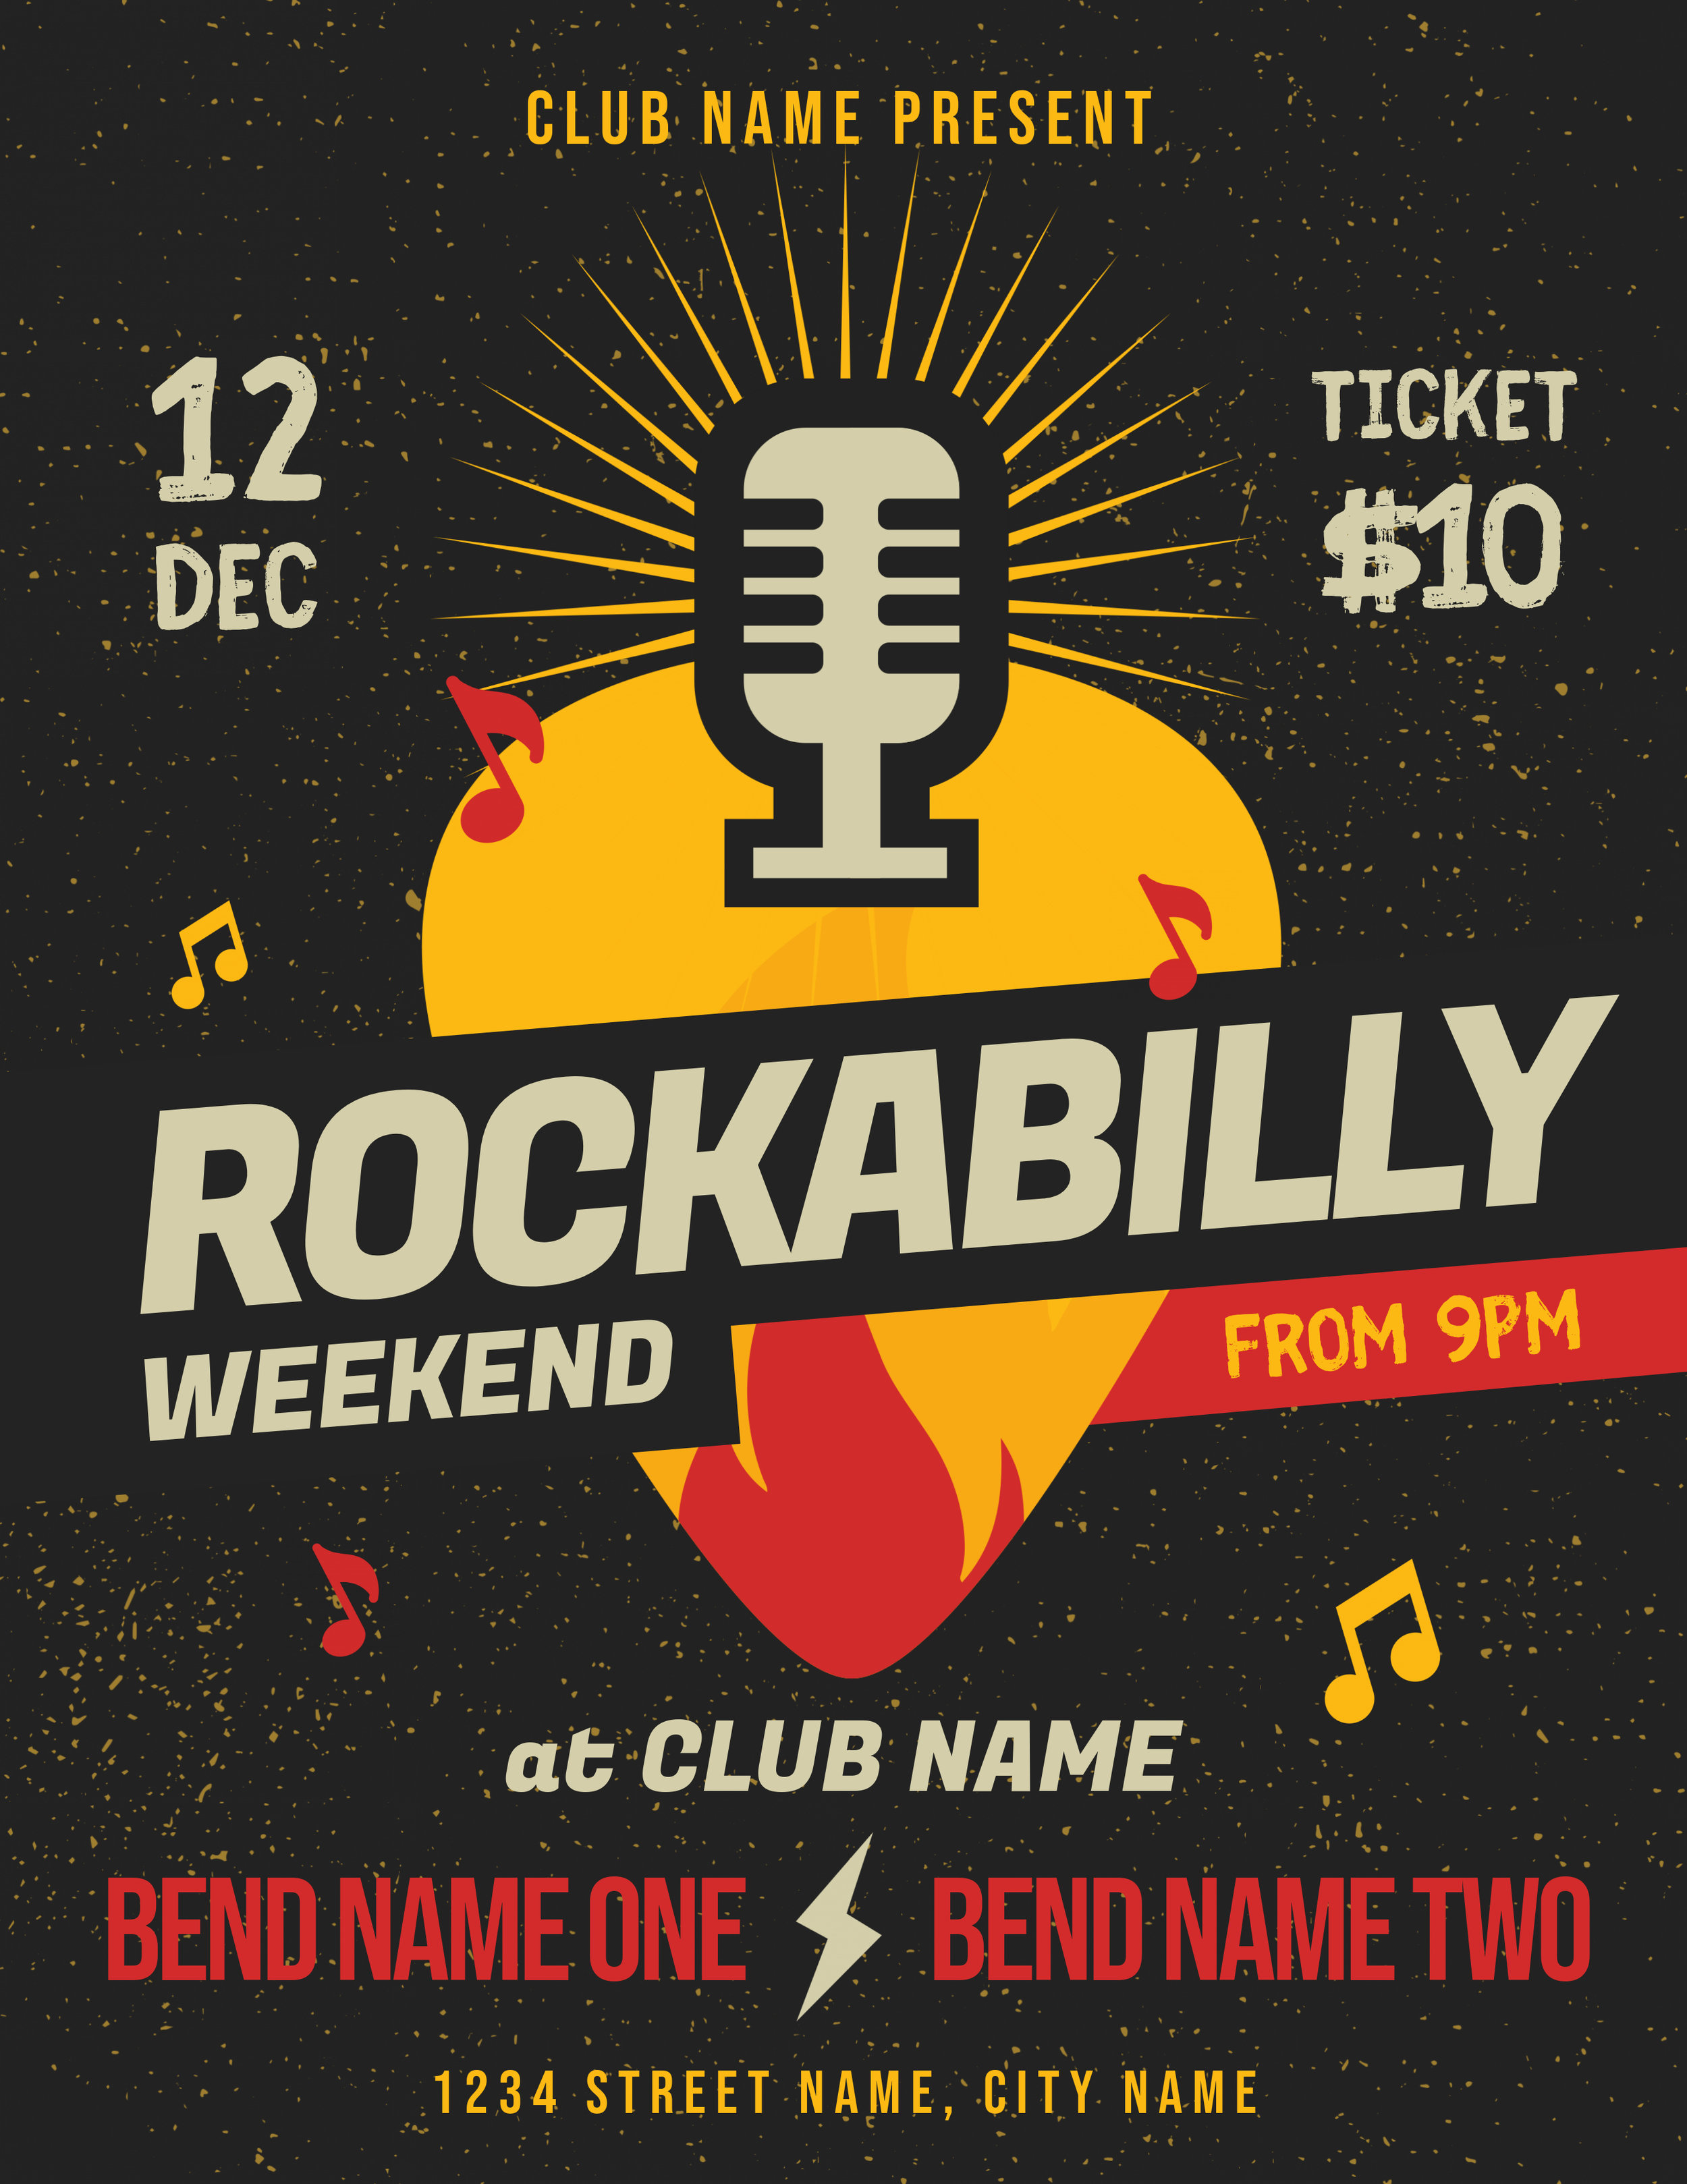 Rockabilly Music Event Flyer Template.jpg